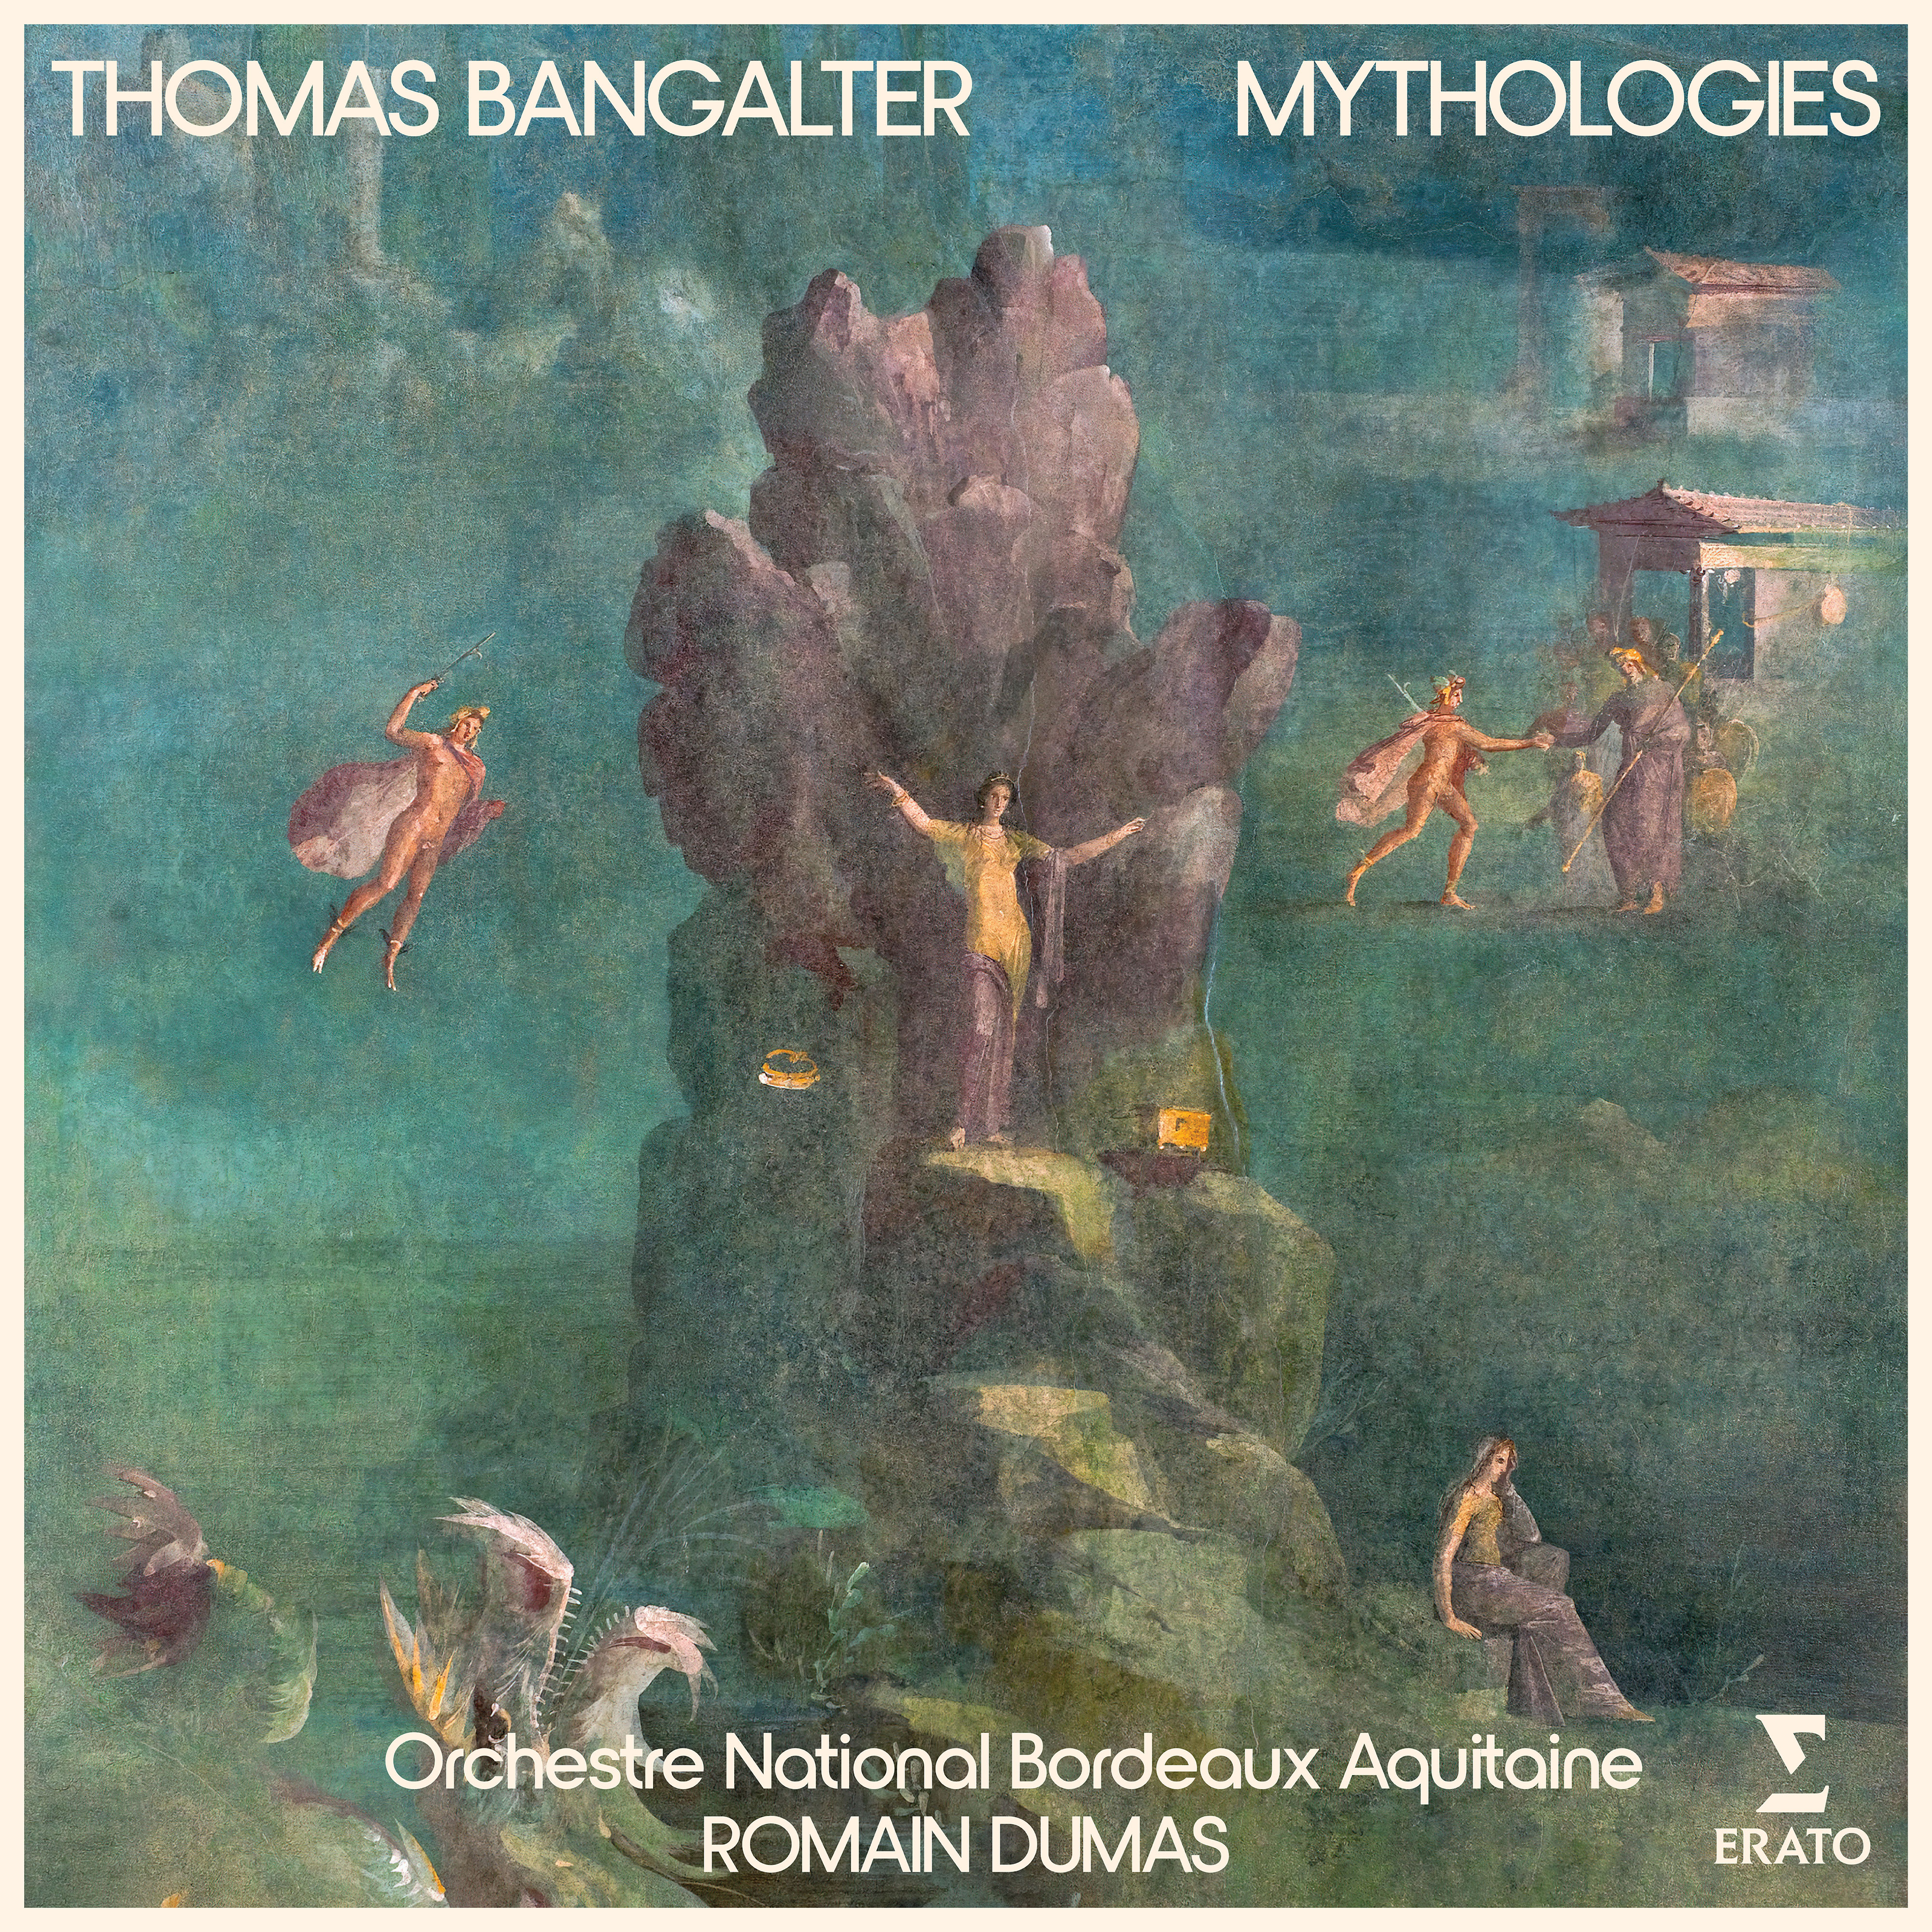 mythologies album cover thomas bangalter